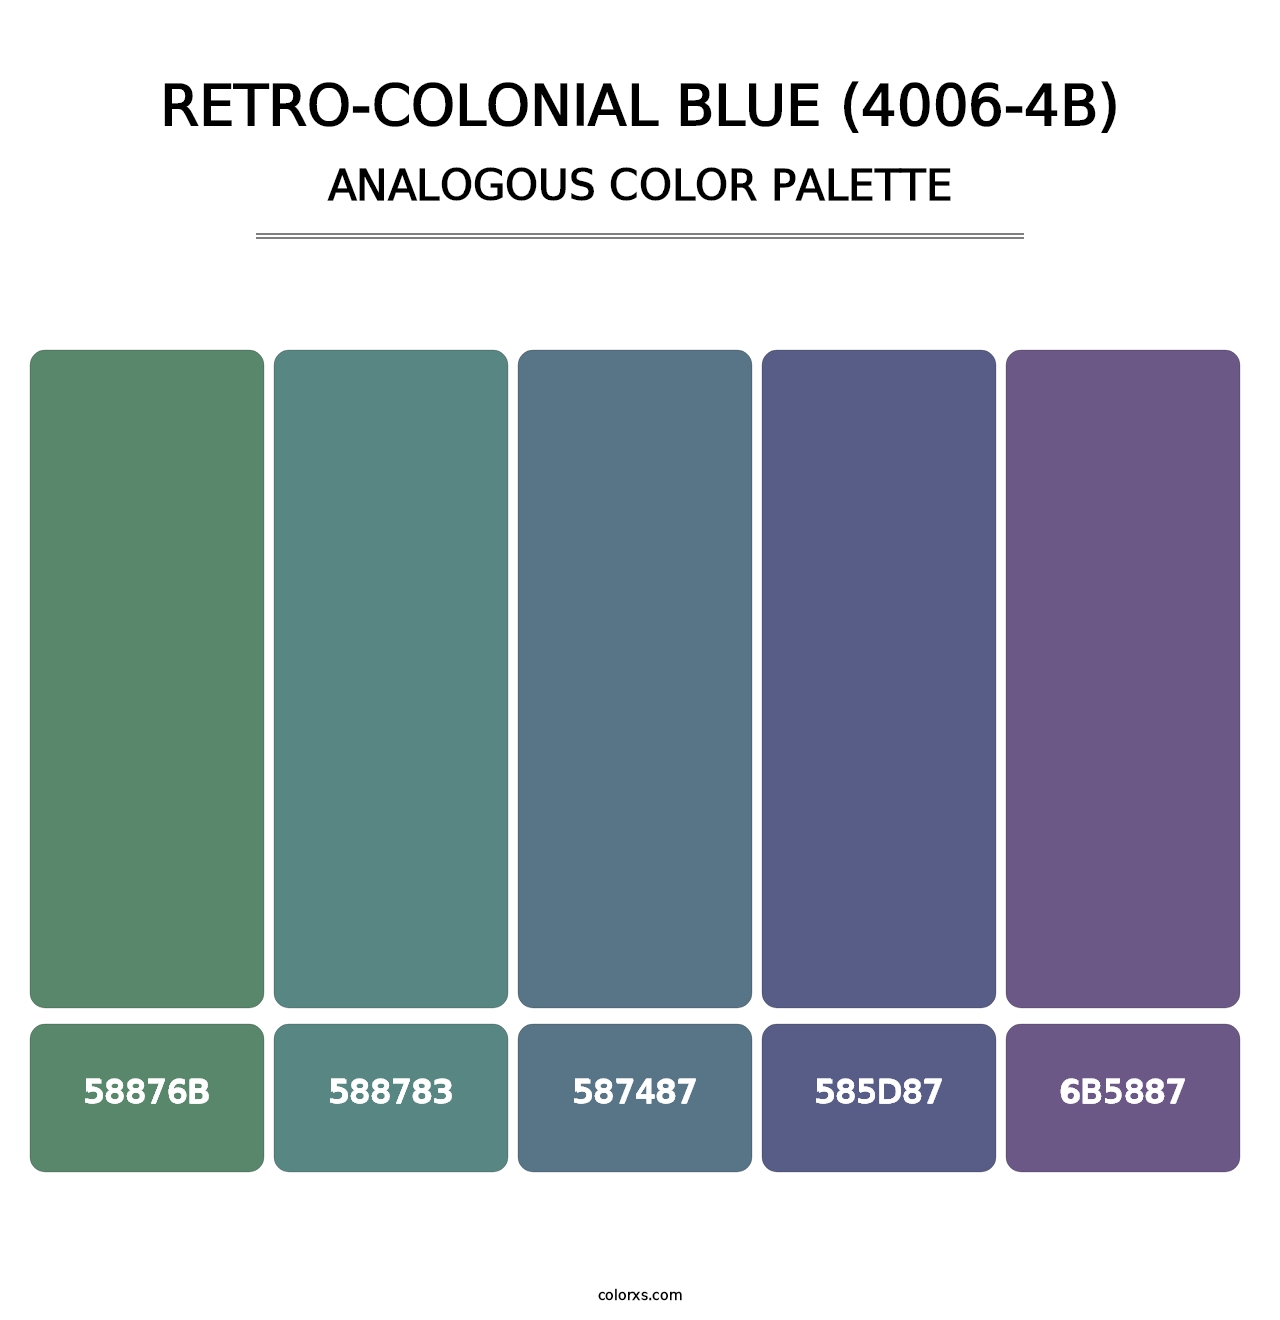 Retro-Colonial Blue (4006-4B) - Analogous Color Palette